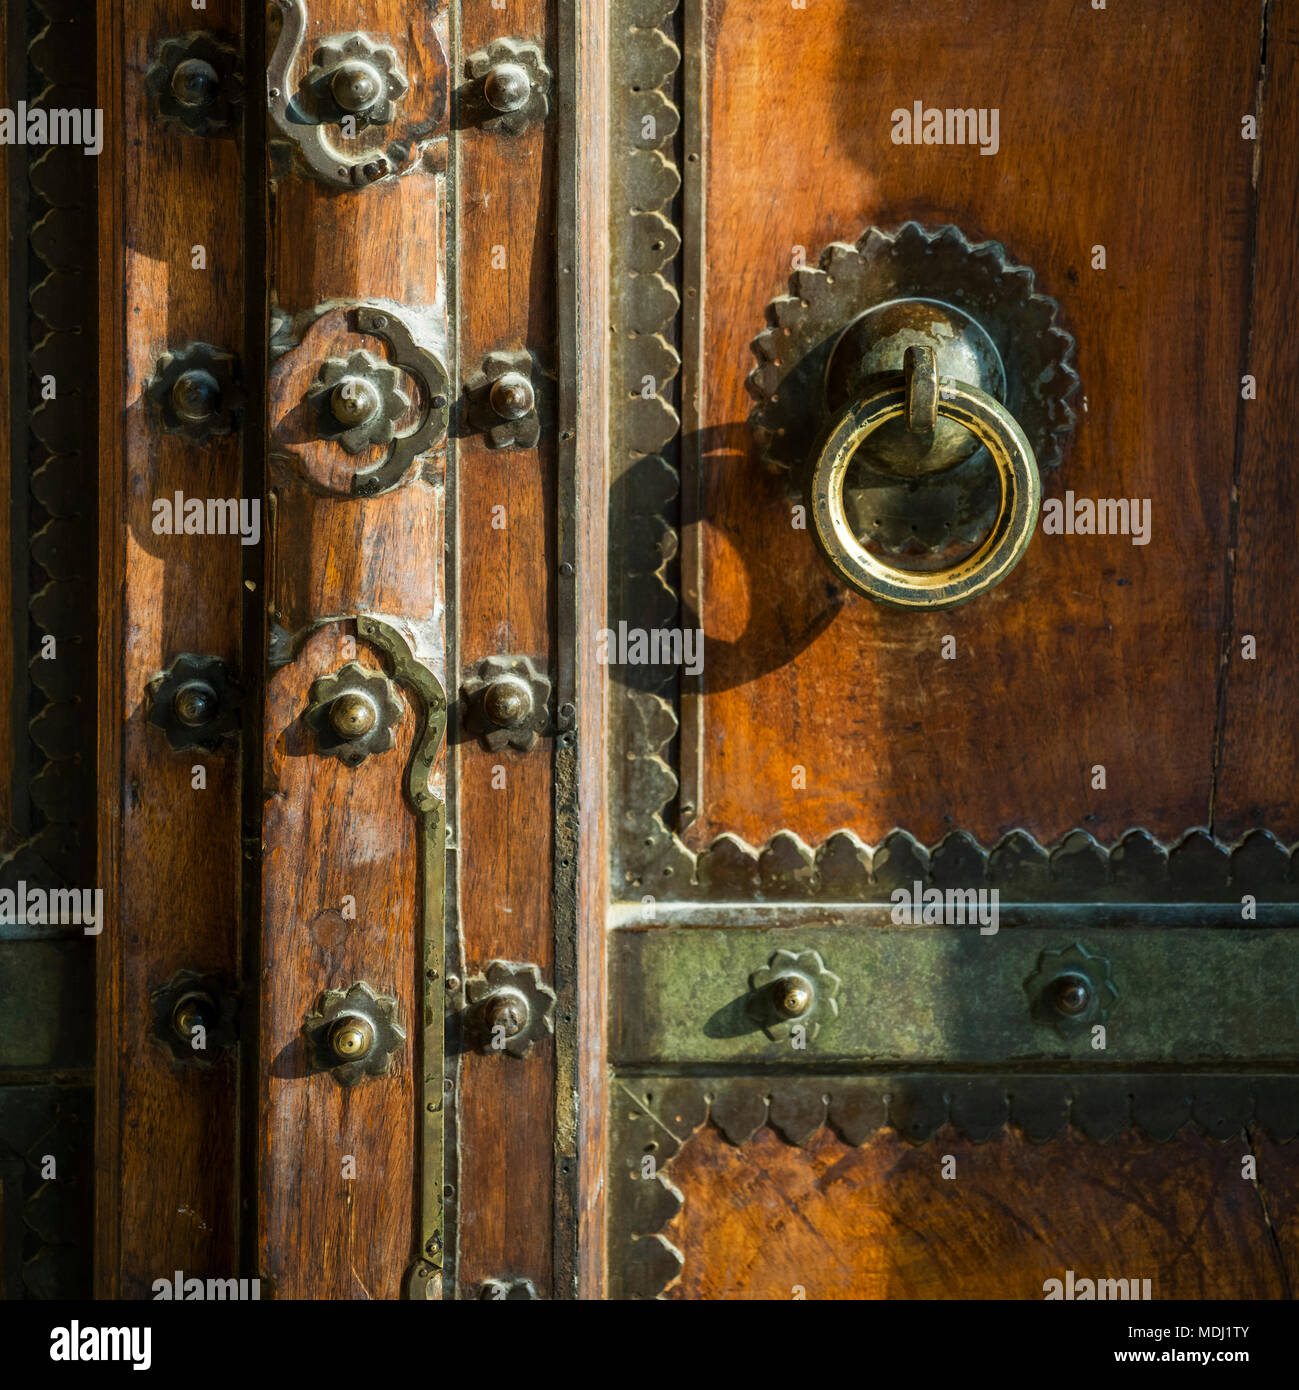 Metall dekorative Details auf einer hölzernen Tür, Amer Fort, Jaipur, Rajasthan, Indien Stockfoto